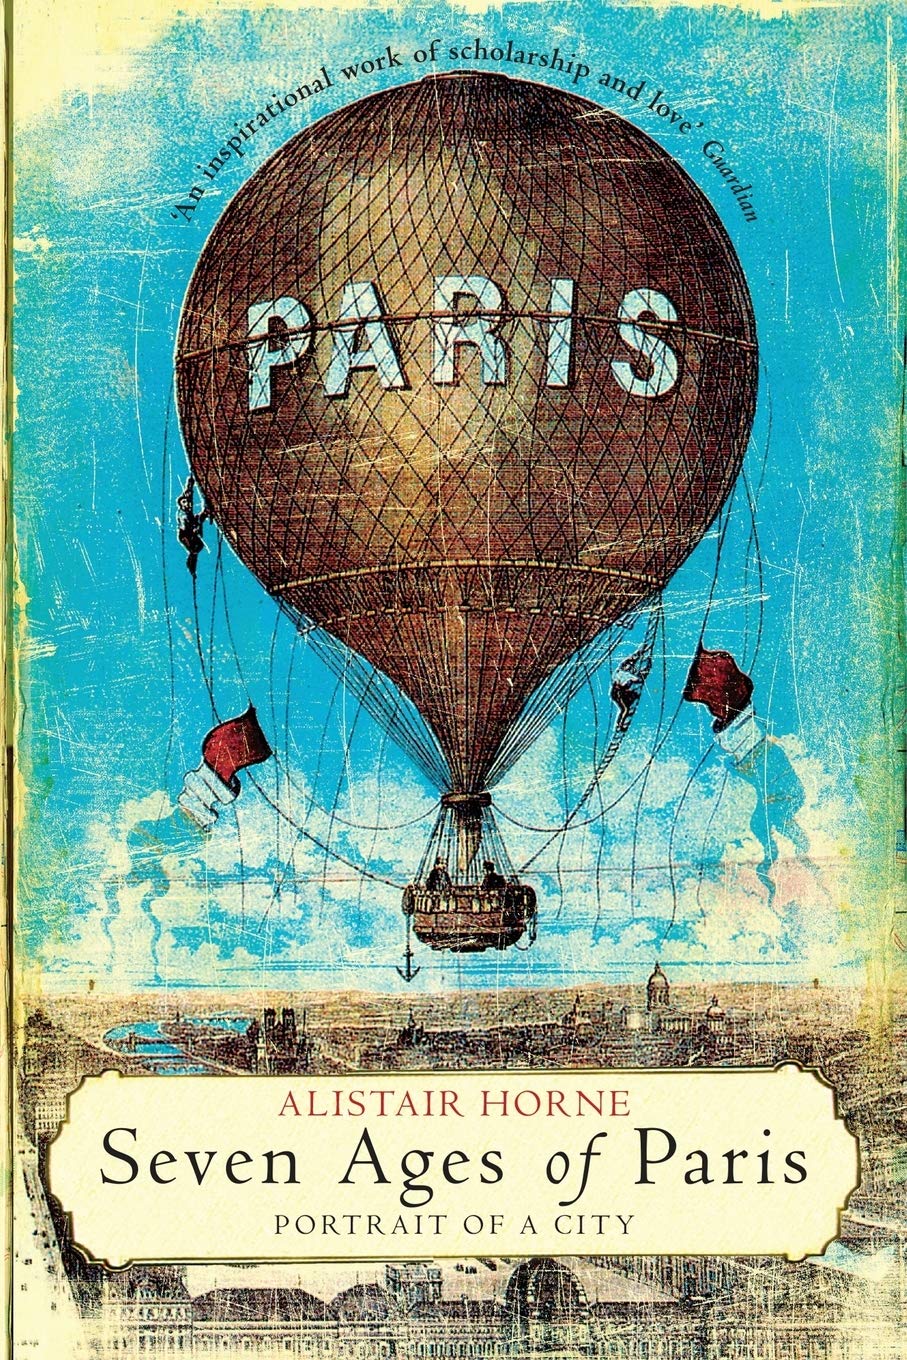 Seven Ages of Paris: Portrait of a City by Alistair Horne